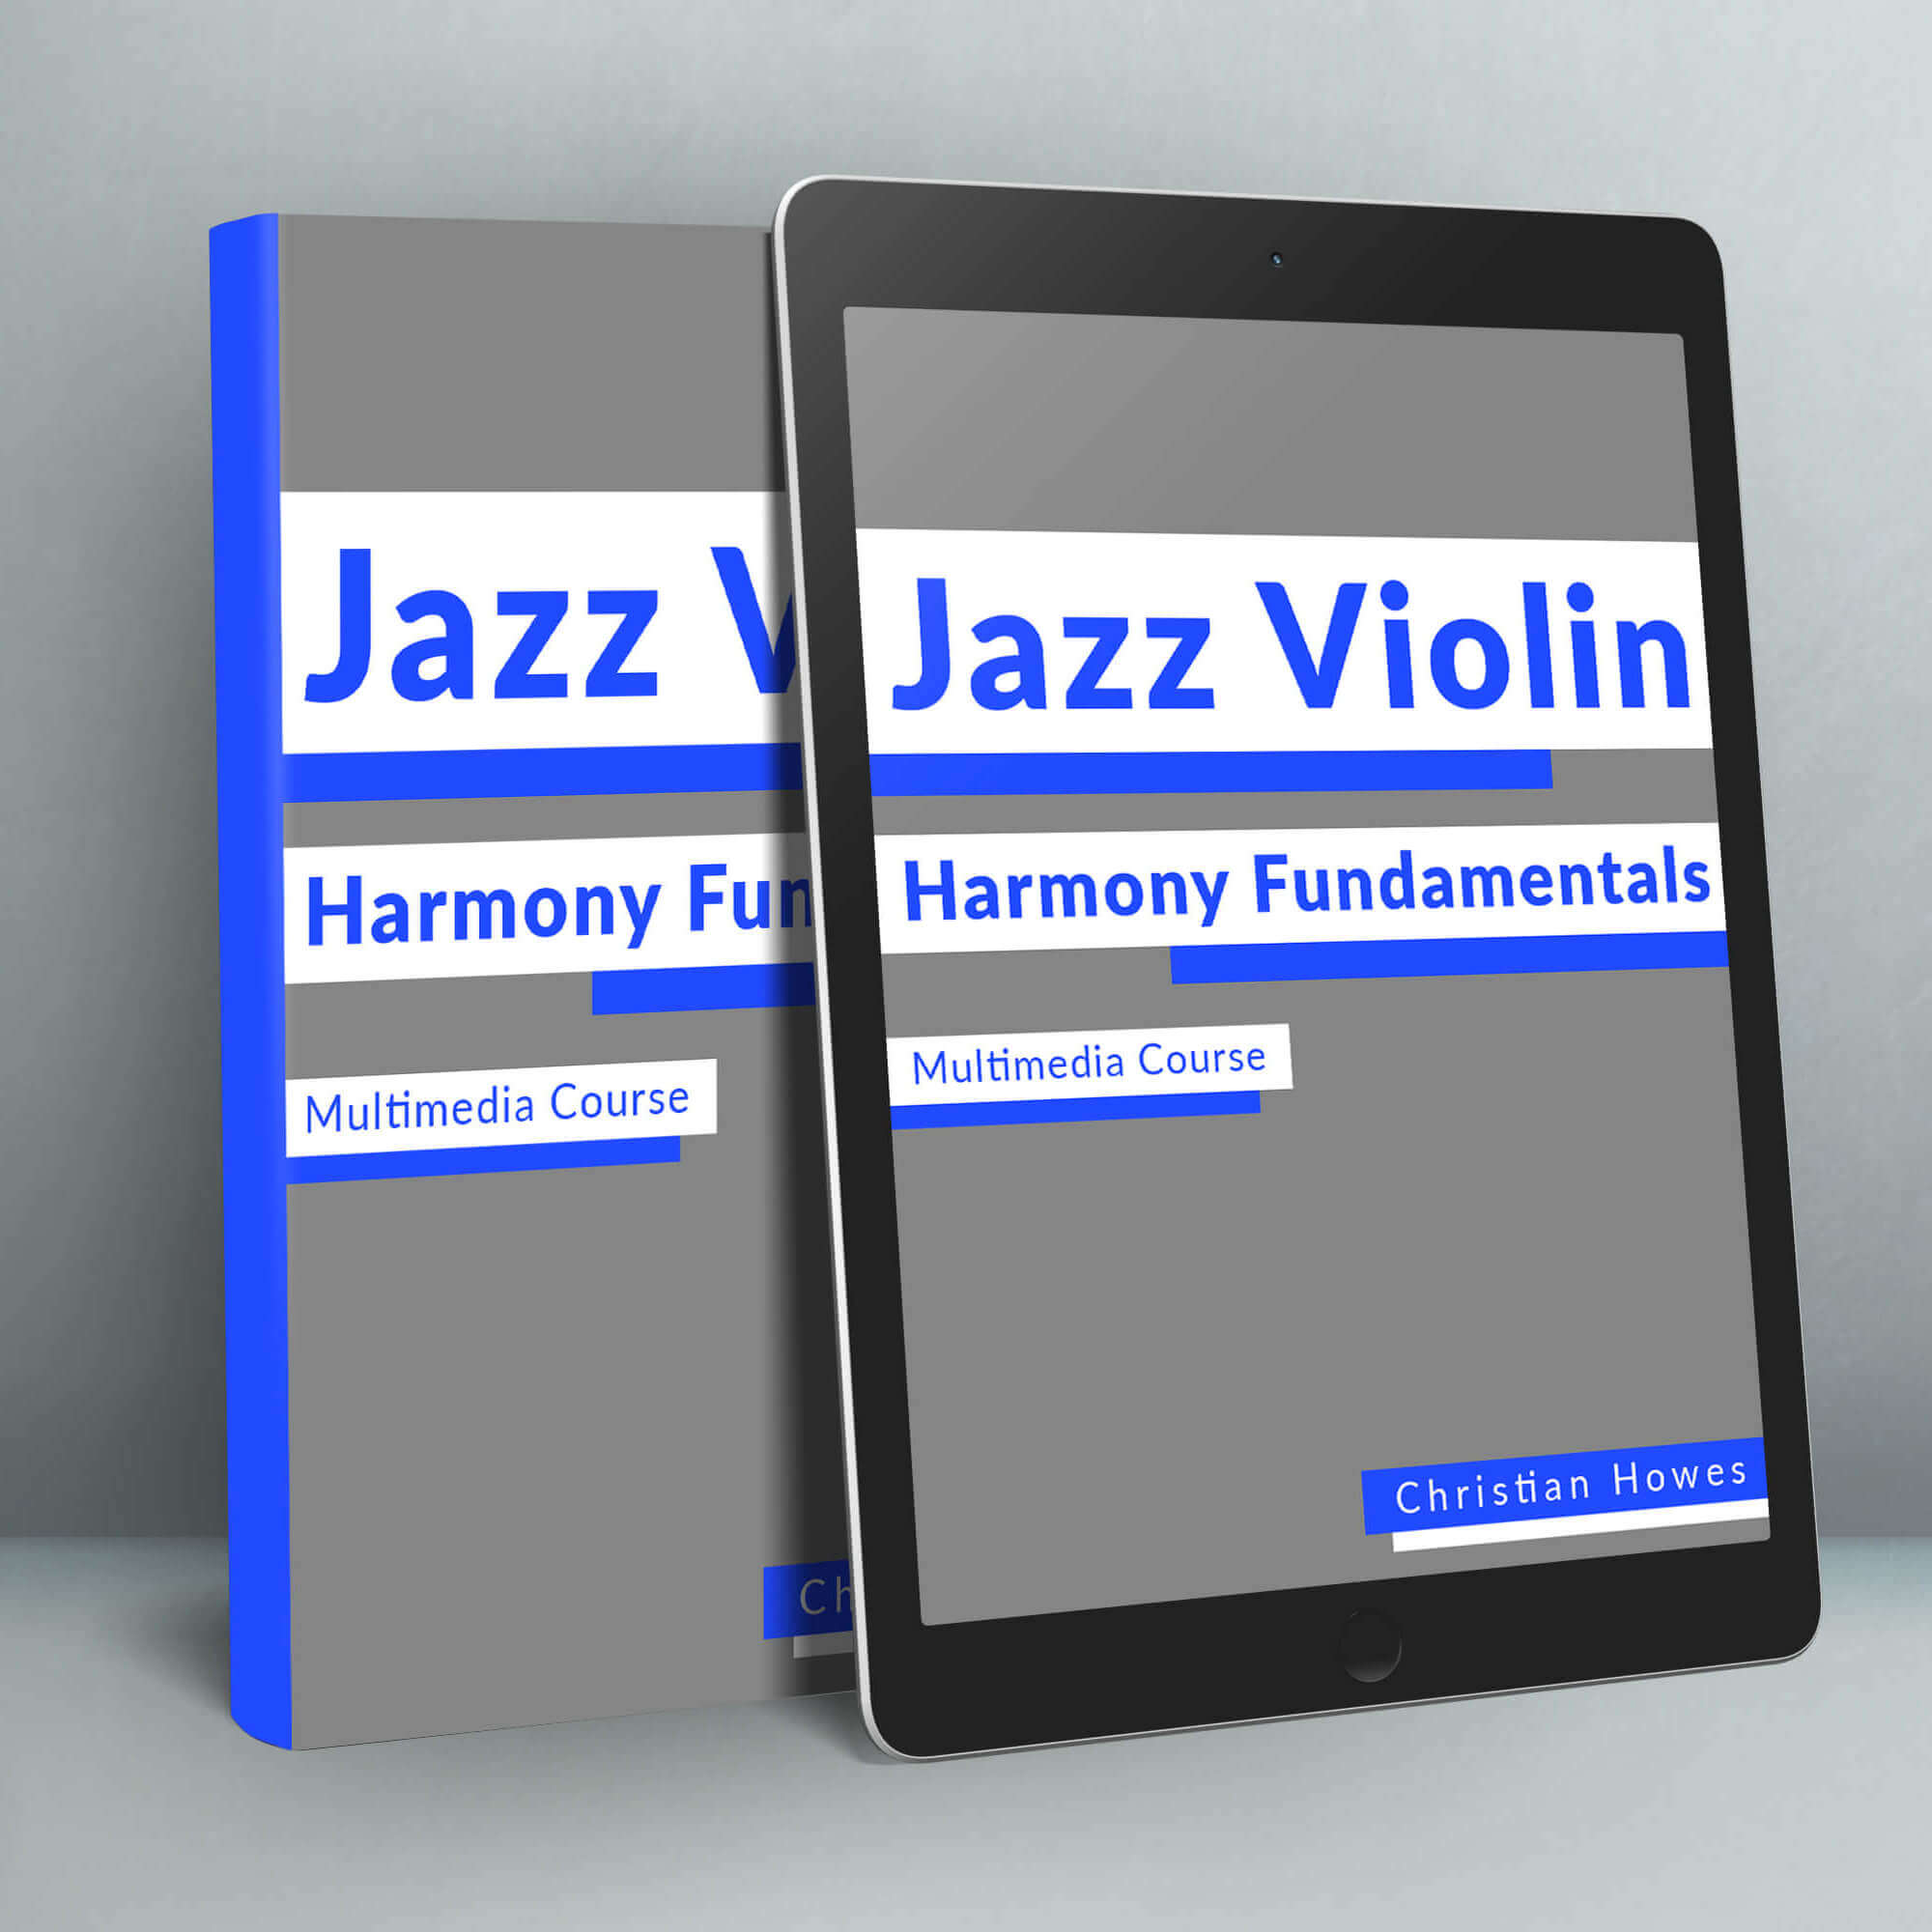 Jazz Violin Harmony Fundamentals Multimedia Course (Video Series + eBook)